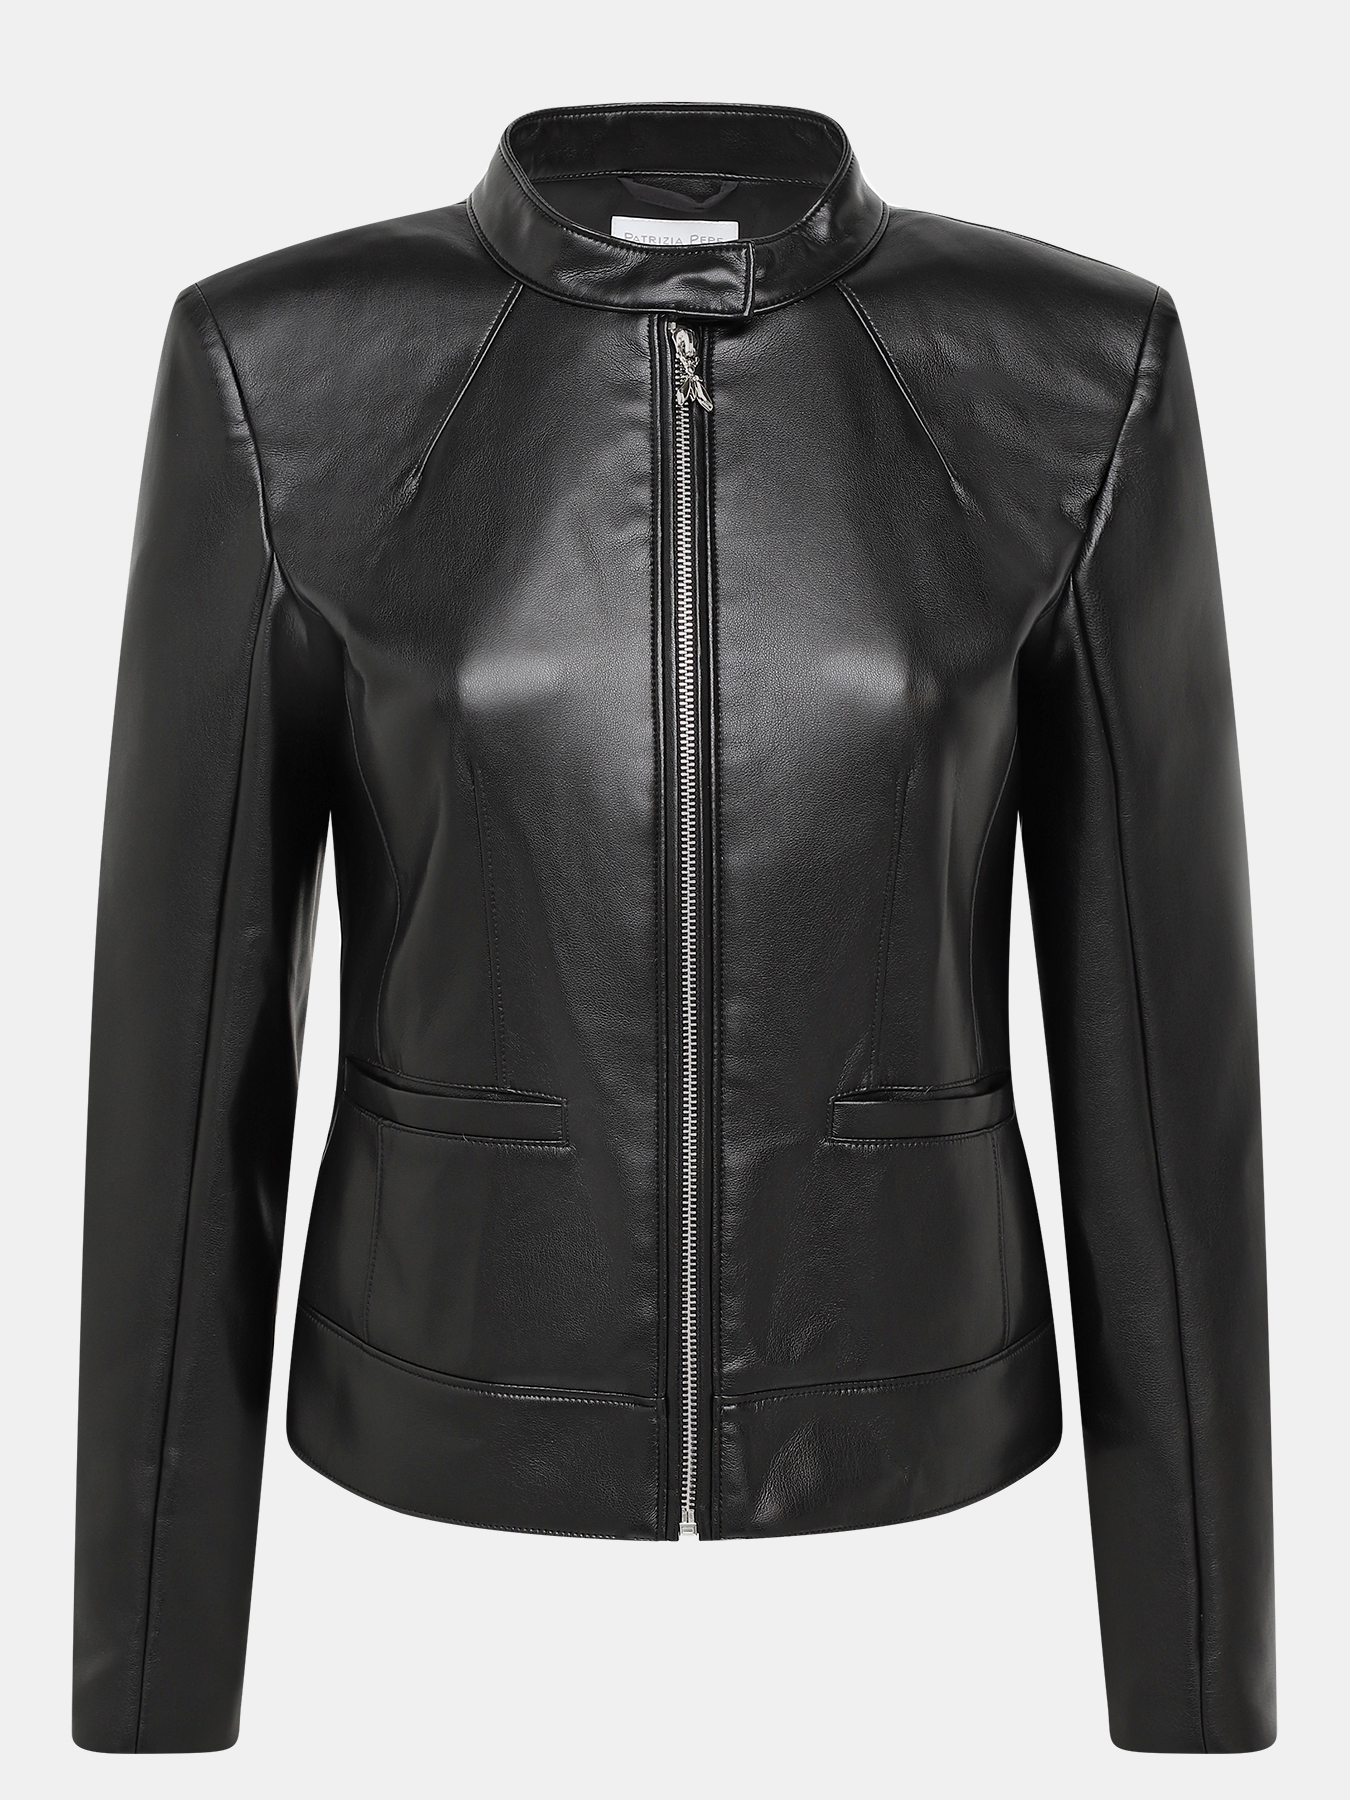 Кожаная куртка Patrizia Pepe 422551-020, цвет черный, размер 40